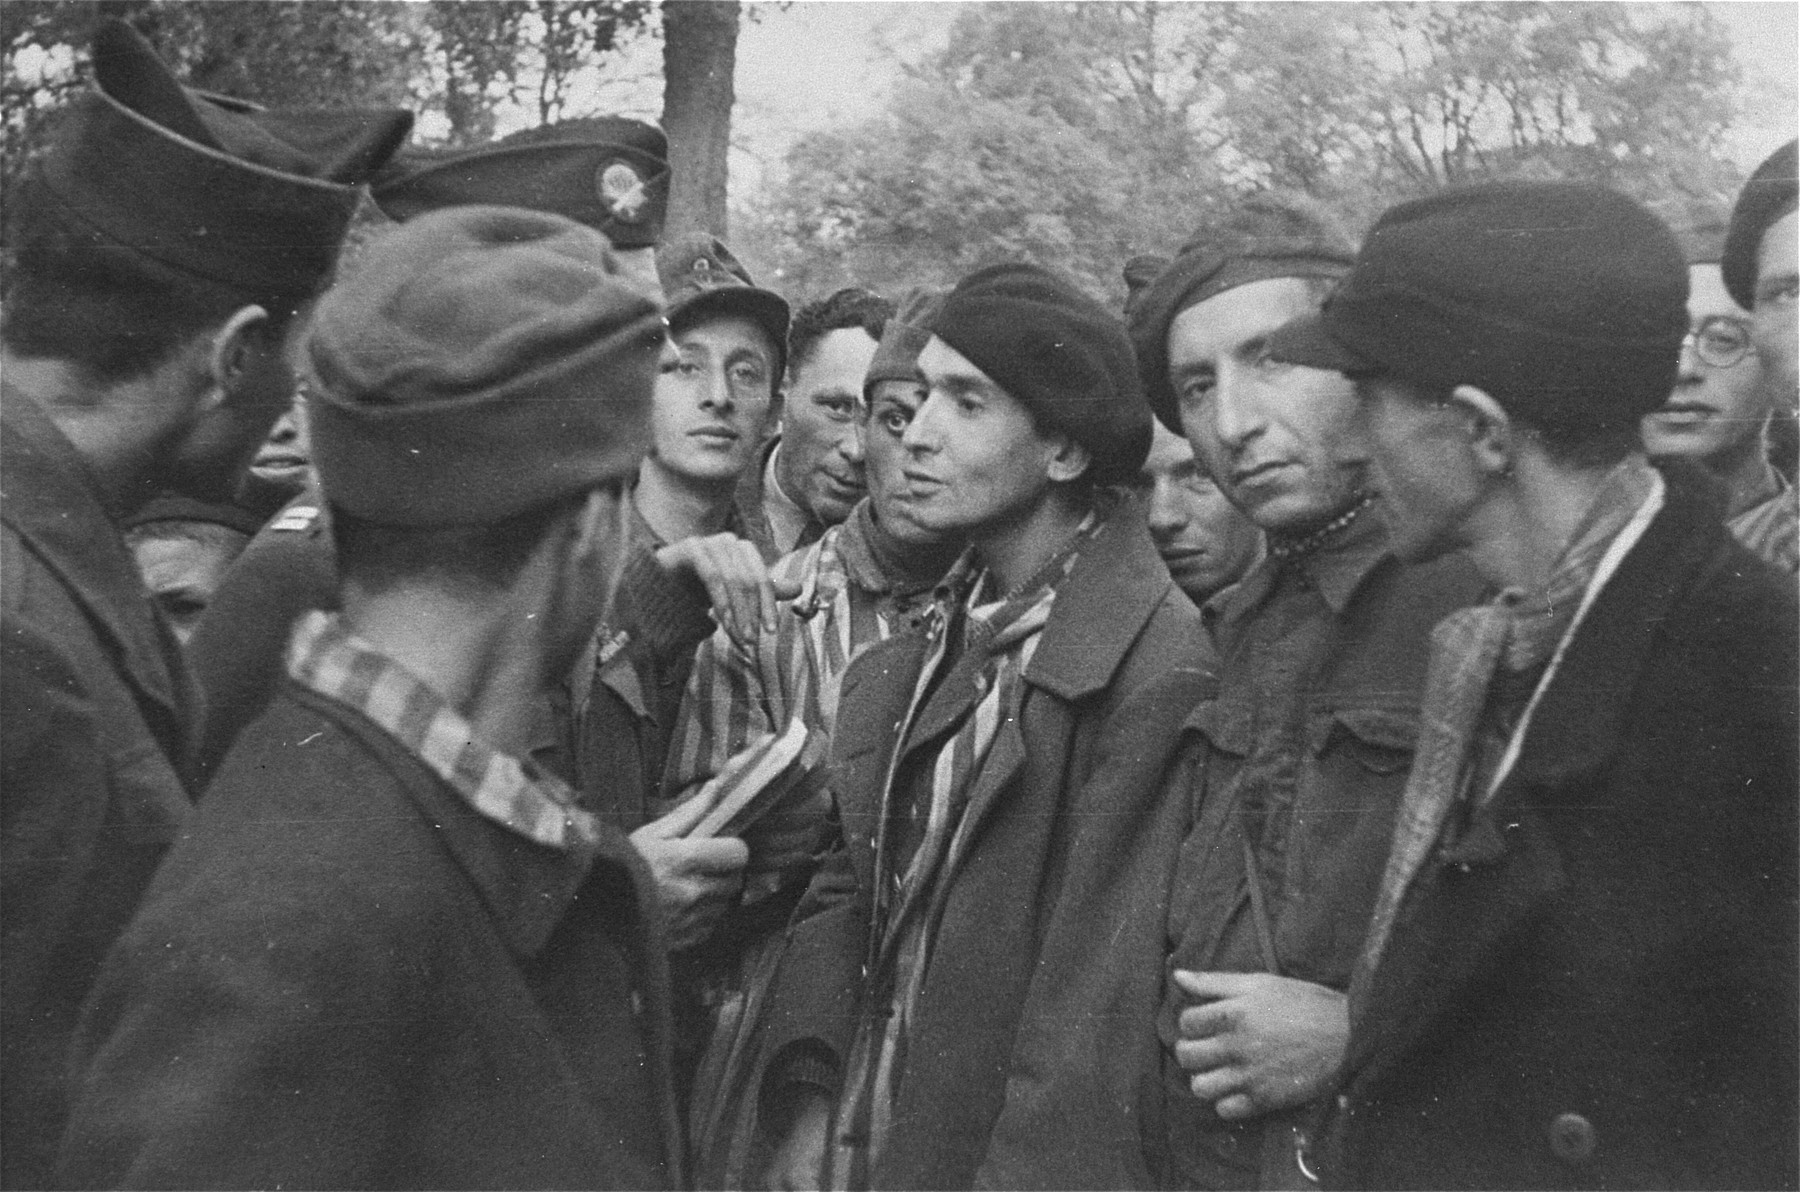 Survivors in Woebbelin speaking with their American liberators.